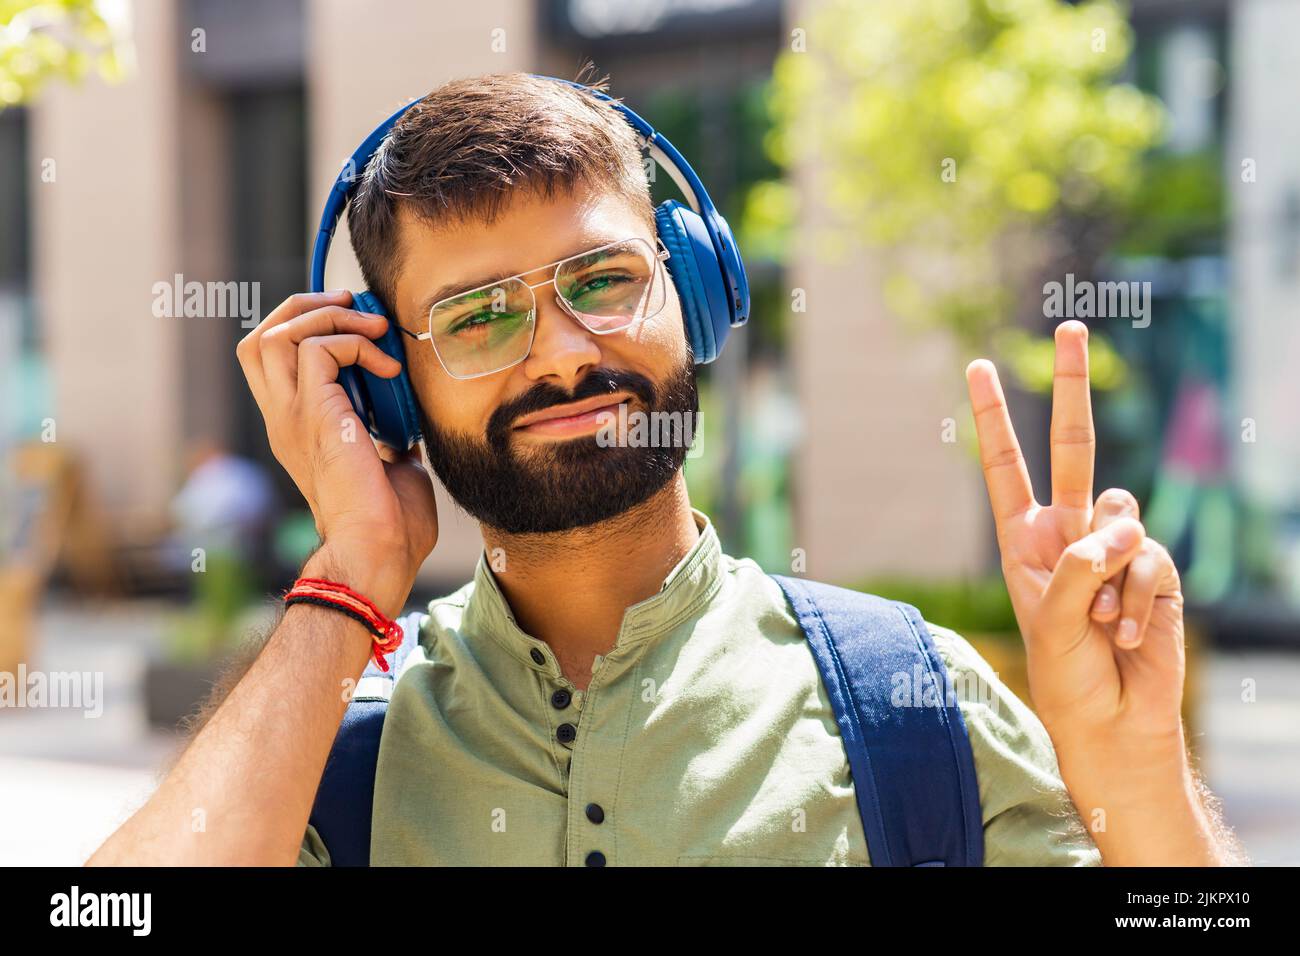 indischer Student mit blauem Headset und Rucksack, der an einem sonnigen Tag gut aussieht Stockfoto